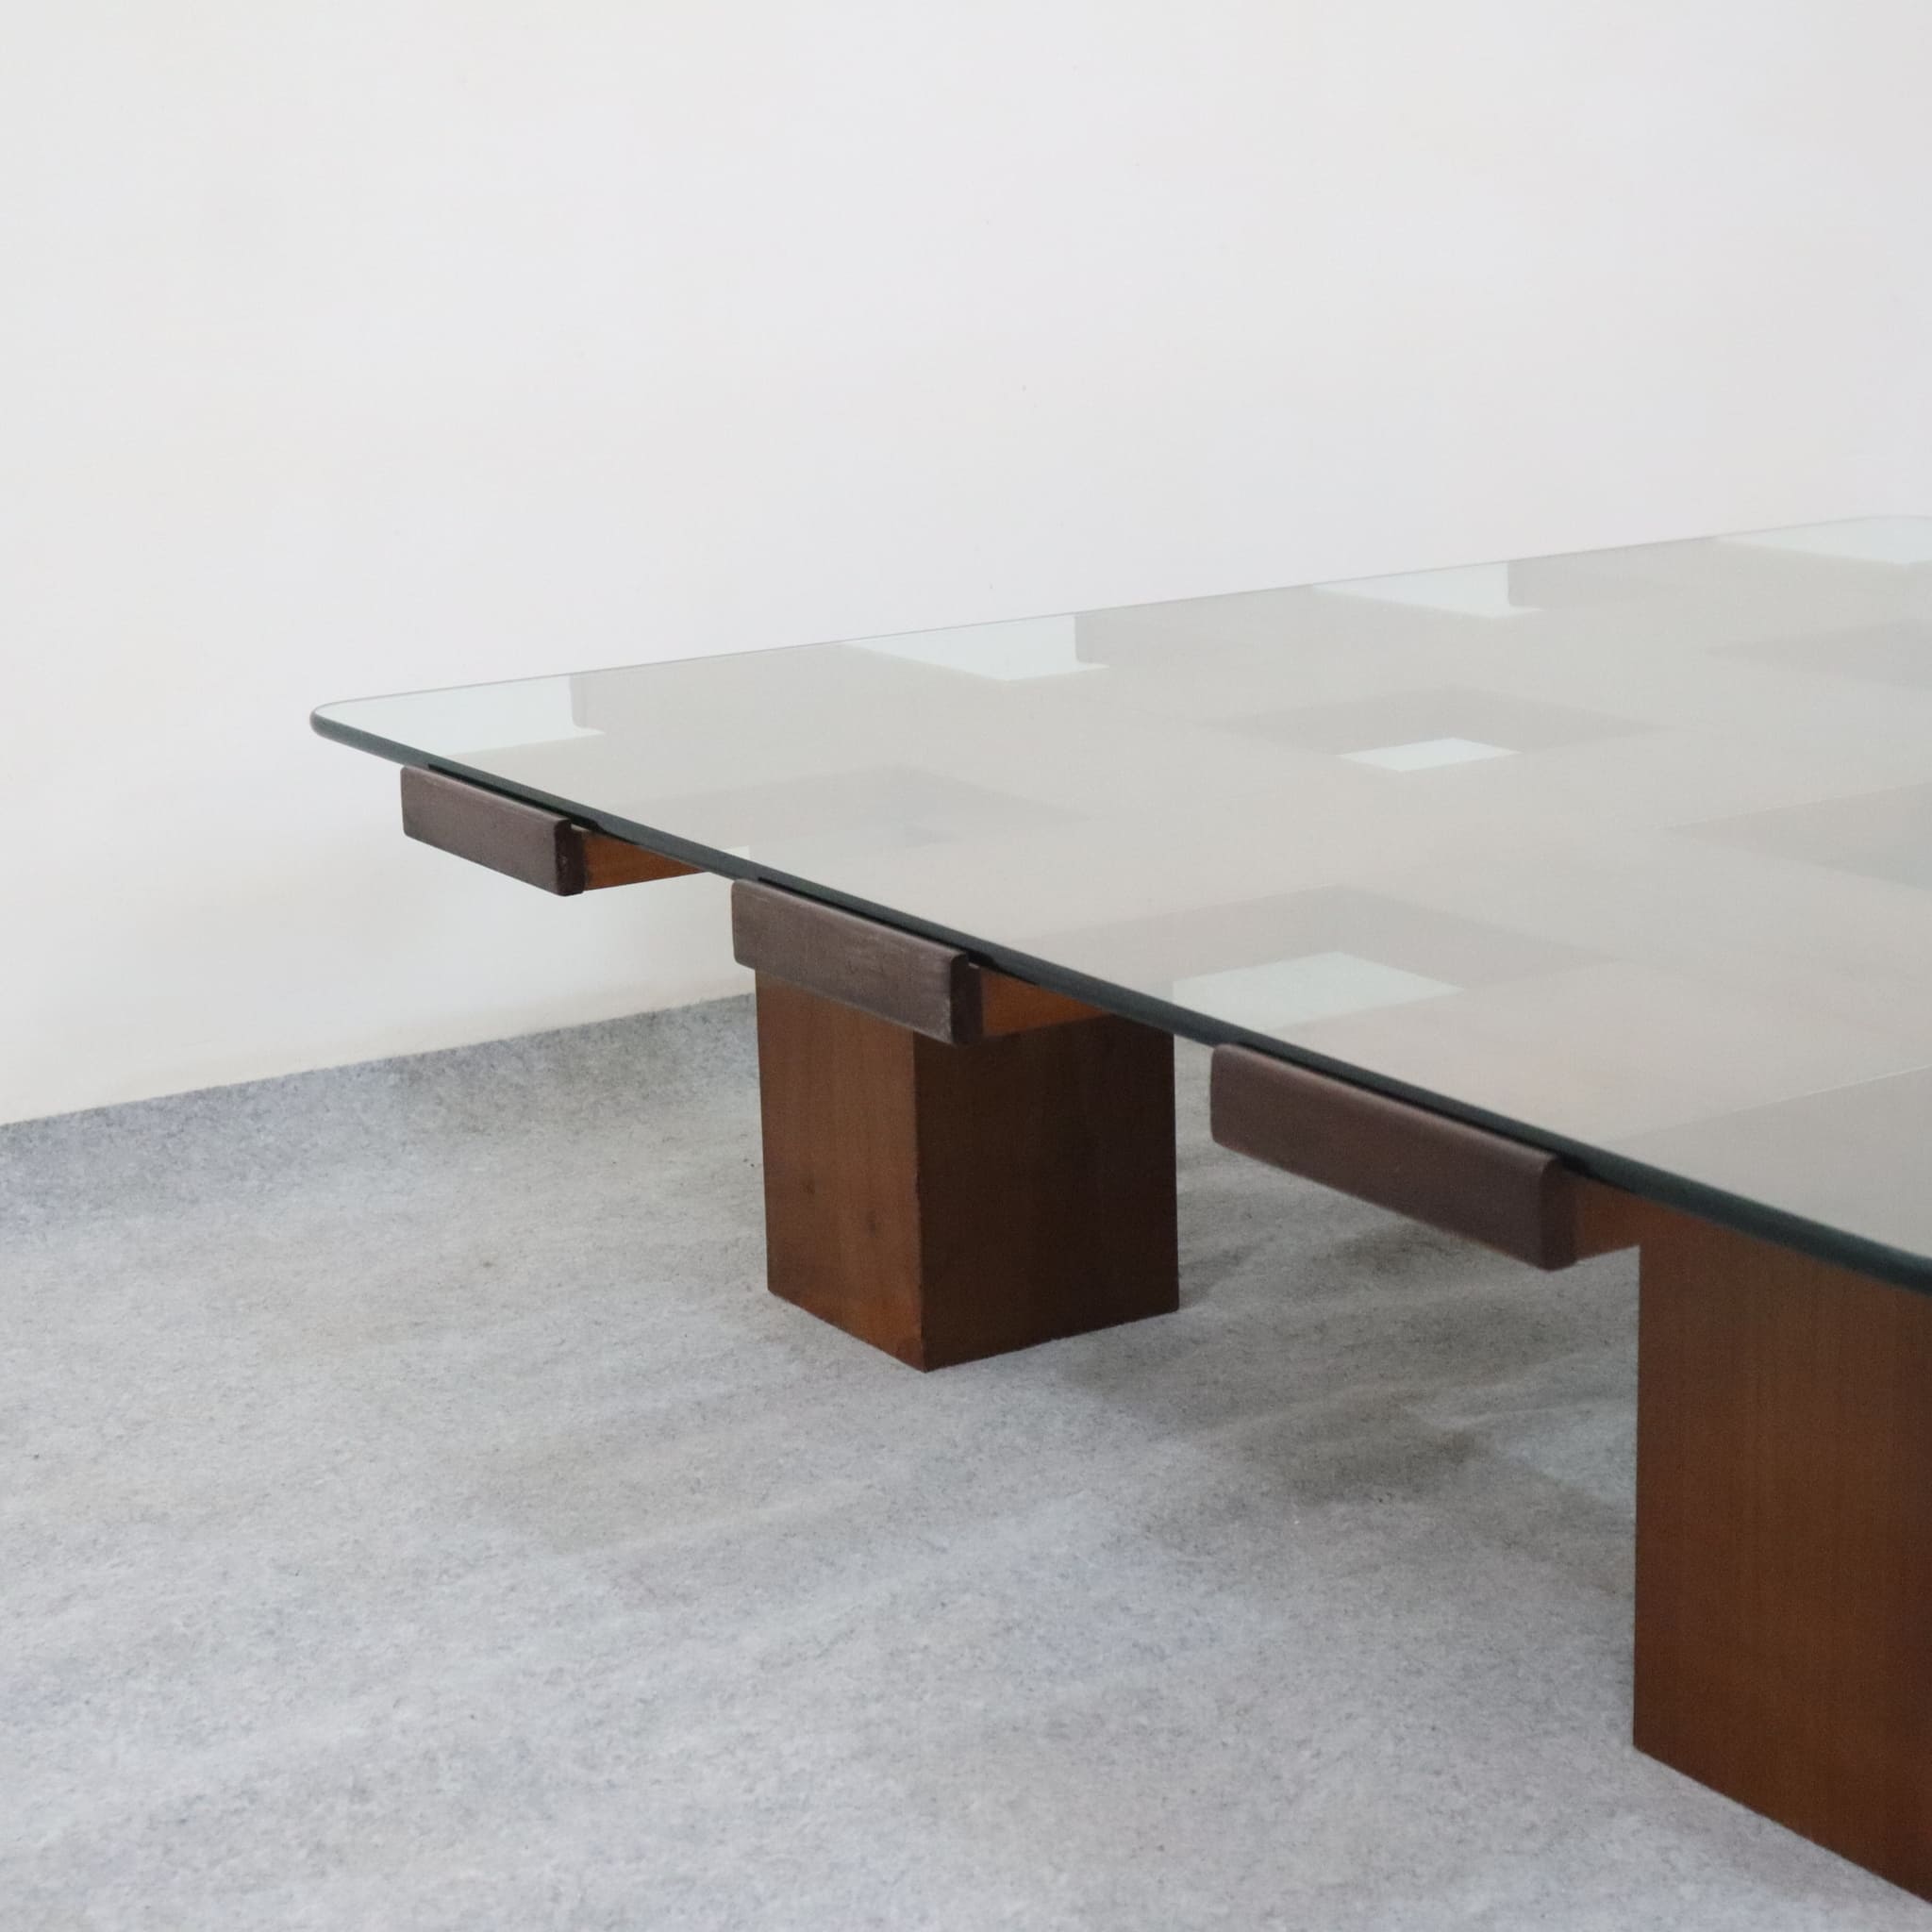 tavolino-caffe-quadrato-anni-70-ciliegio-cristallo-stile-bernini-visuale-dettaglio-piedi-ciliegio-vetro-cristallo-visionidepoca